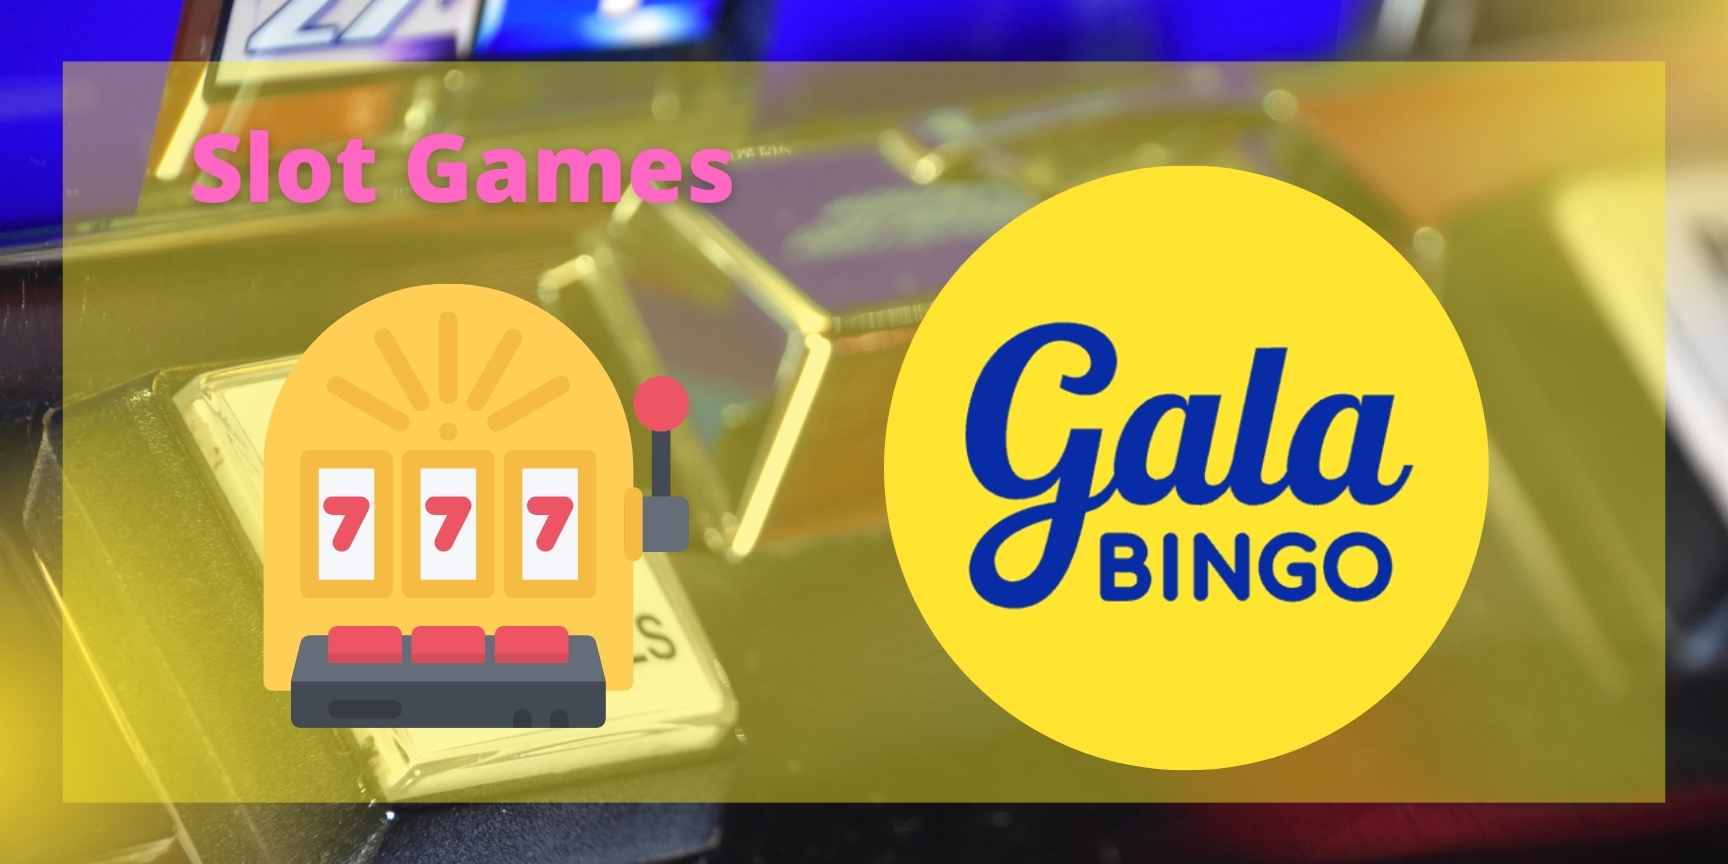 Gala Bingo slots